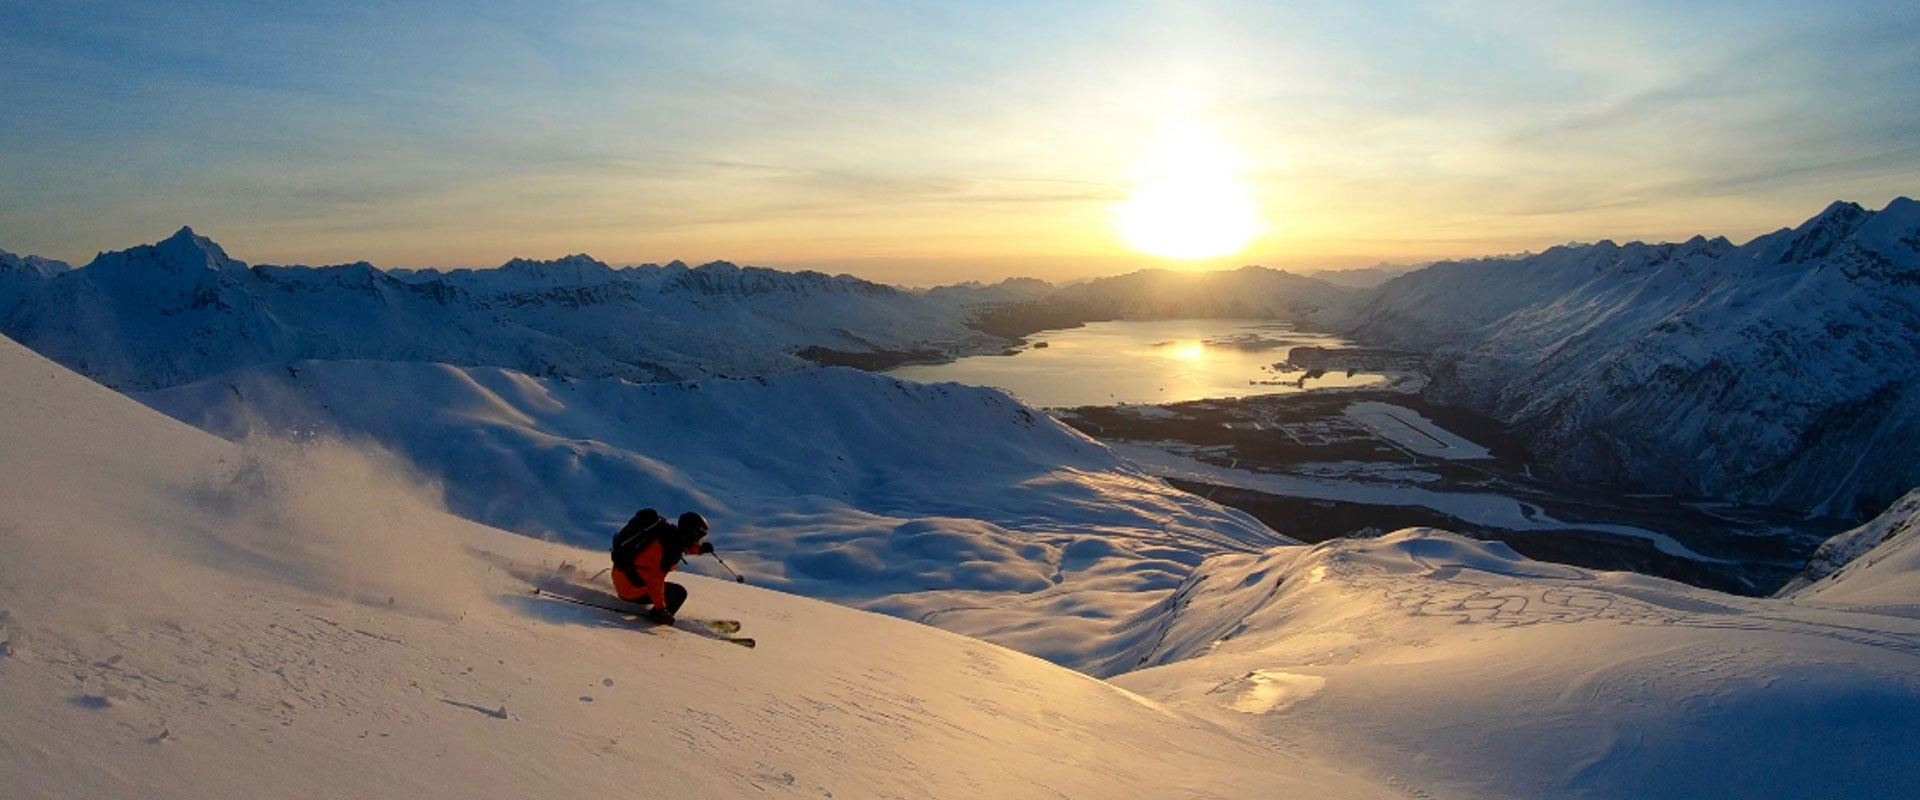 Skier on mountain at sunset